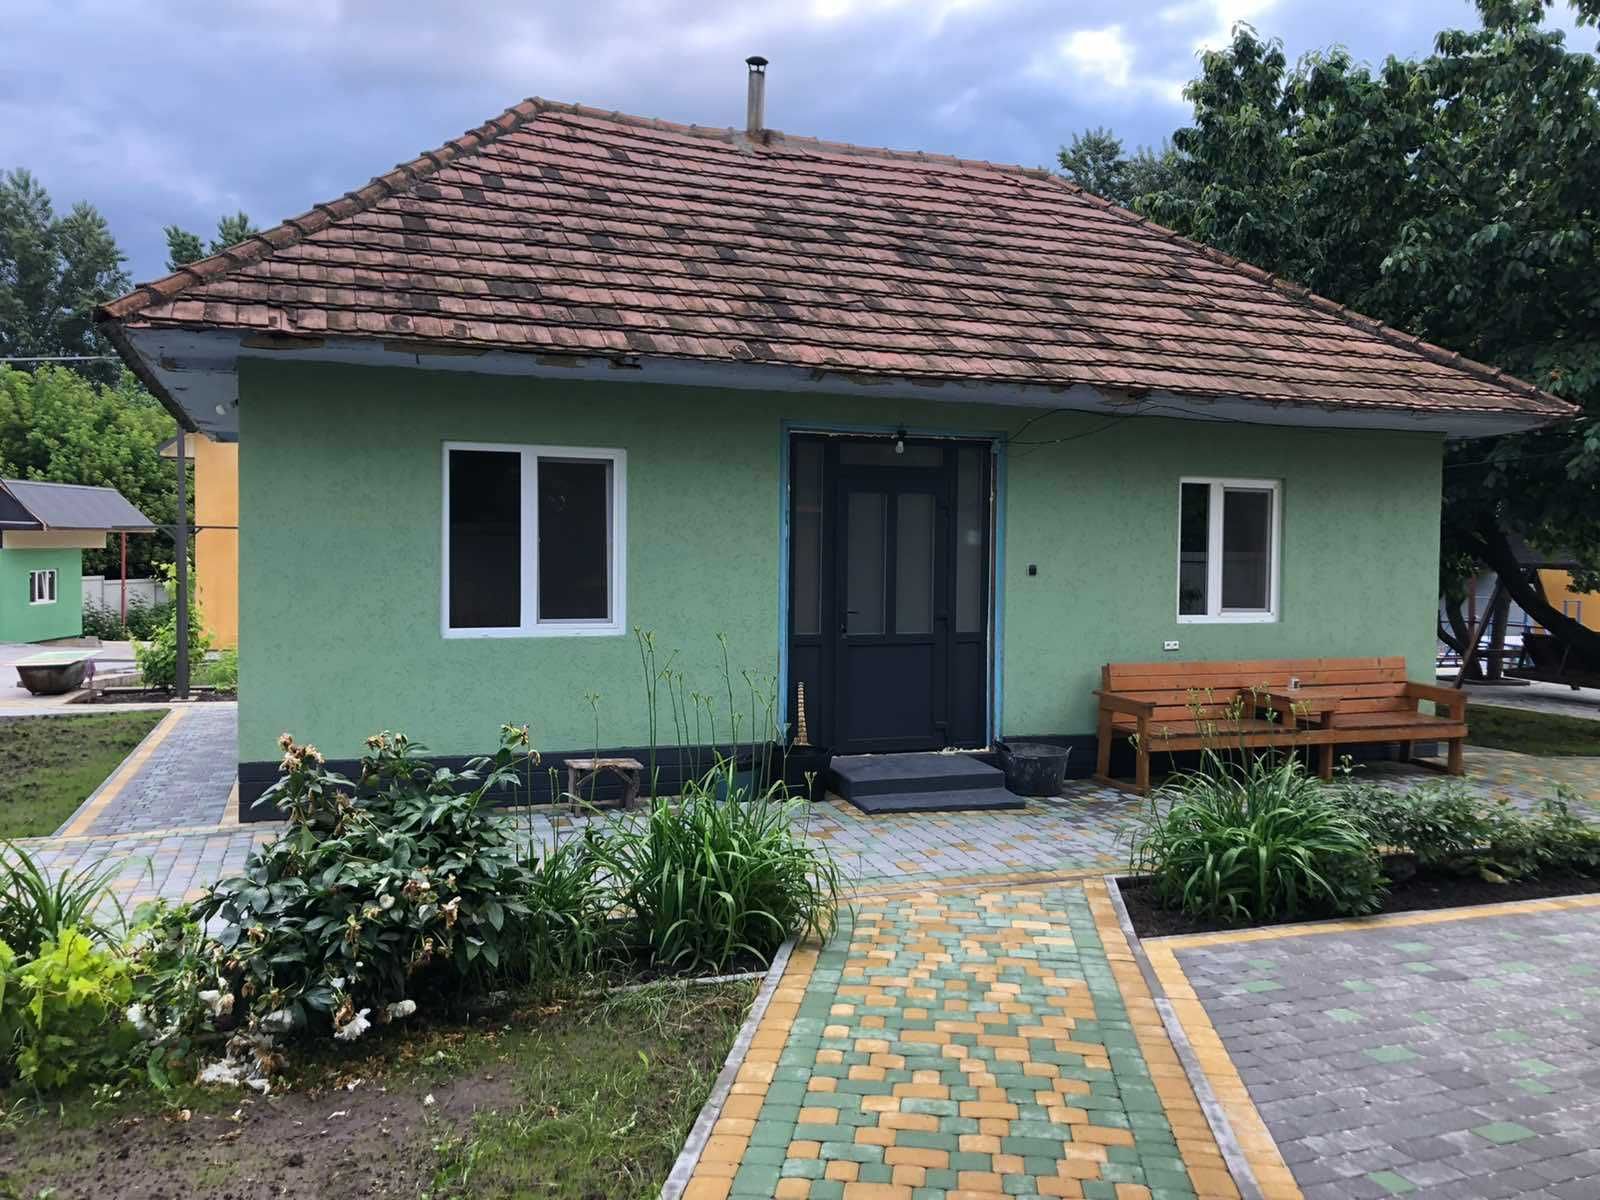 Оренда будинку у базі відпочинку OTVES на березі Дністра.